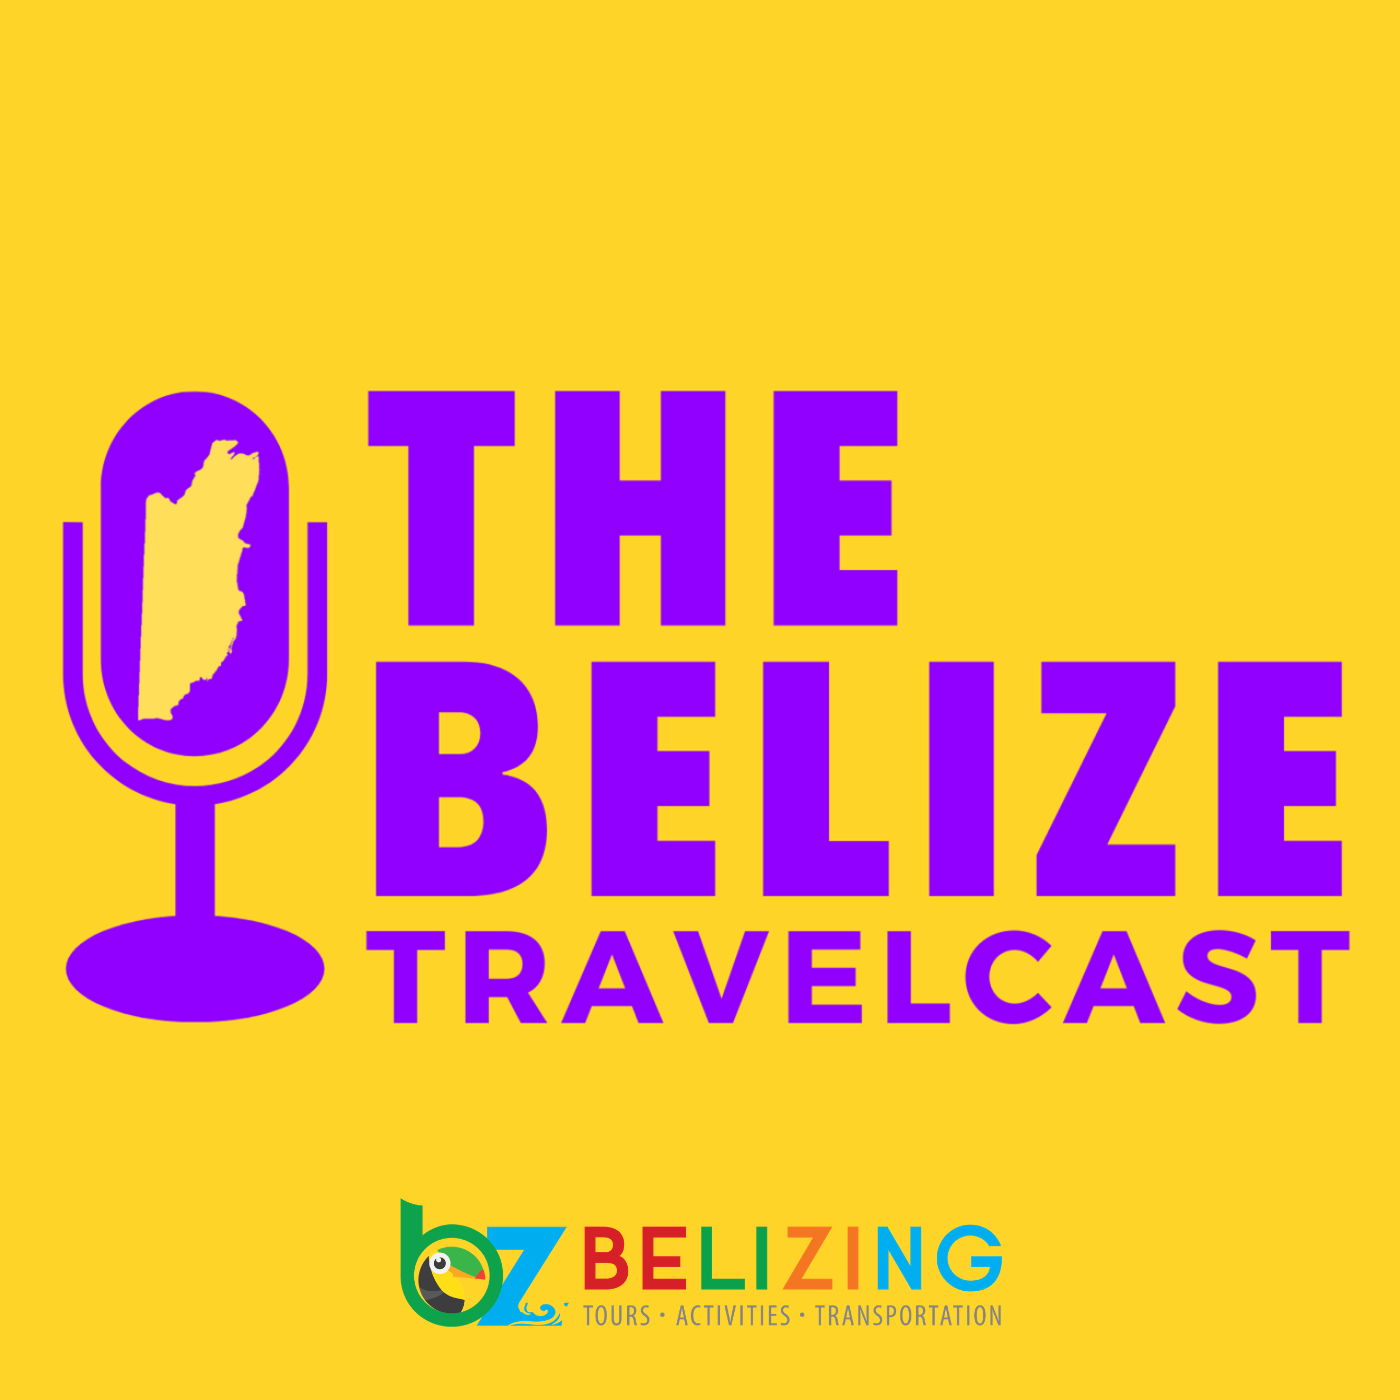 The Belize Travel Cast (Copy)